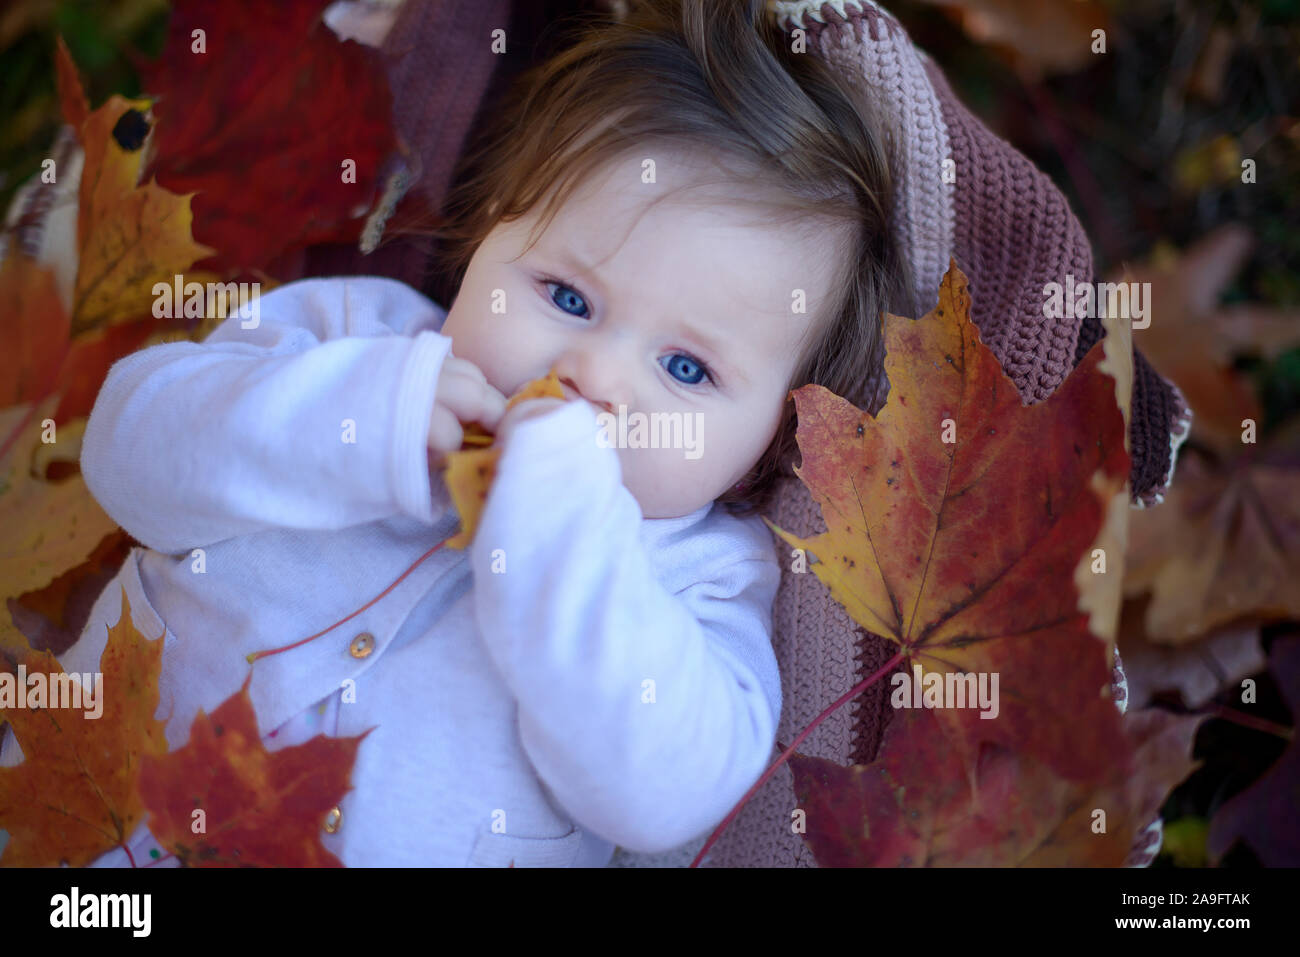 Kaukasisches Baby Madchen Mit Blauen Augen Und Langen Braunen Haaren Lachelnd Und Auf Dem Rucken Auf Einer Weichen Baumwolldecke In Einem Herbstlichen Hintergrund Stockfotografie Alamy